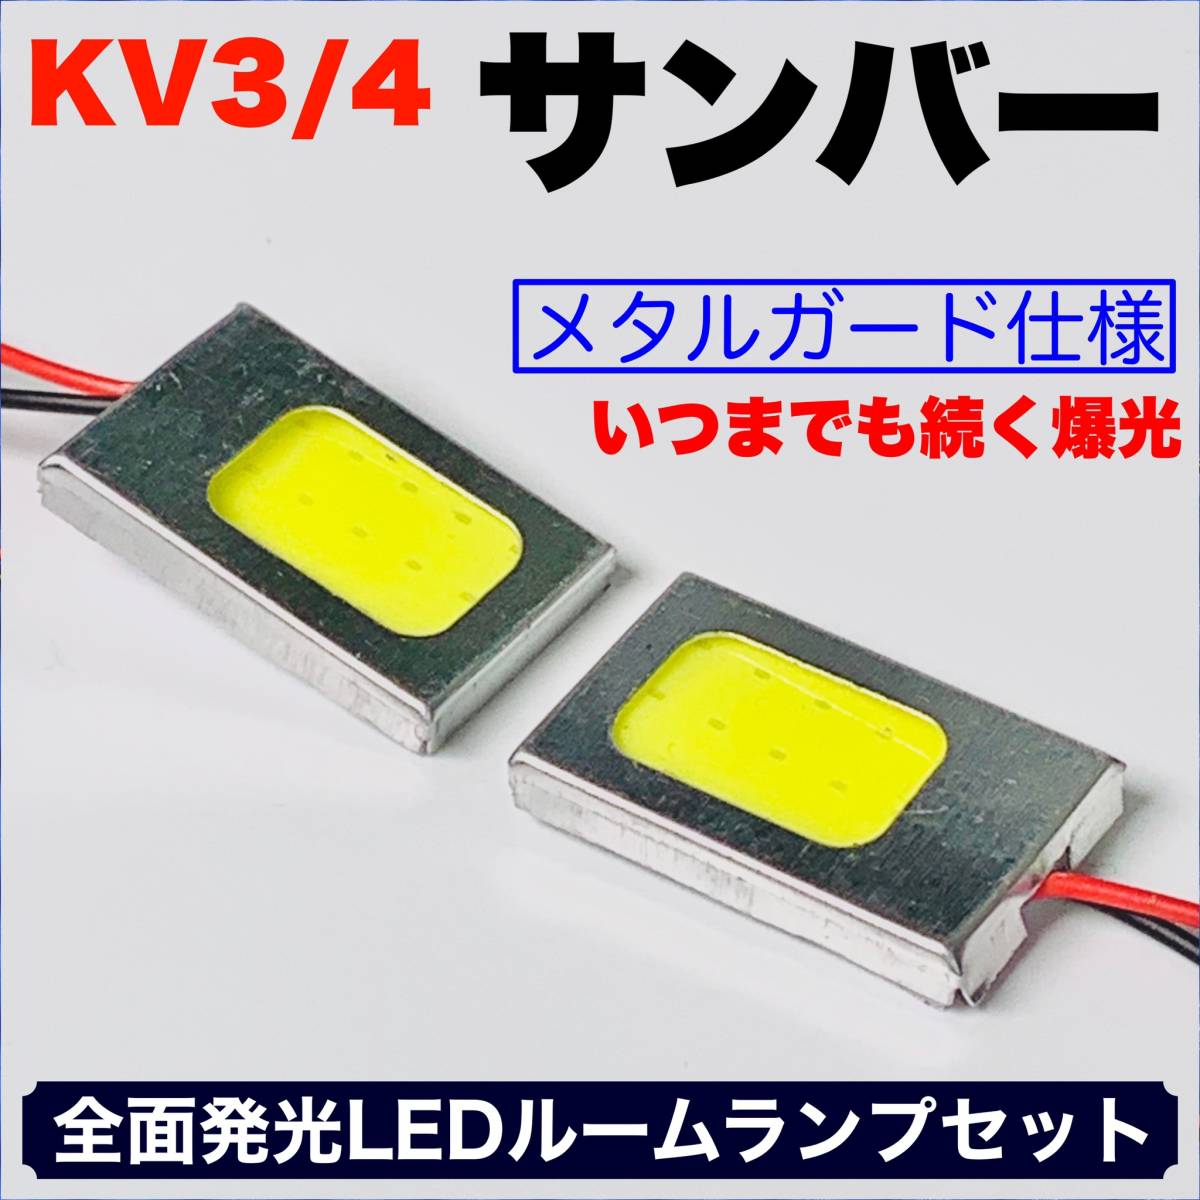 KV3/4 サンバー 適合 COB全面発光 耐久型 基盤 T10 LED ルームランプセット 室内灯 読書灯 超爆光 ホワイト スバル_画像1